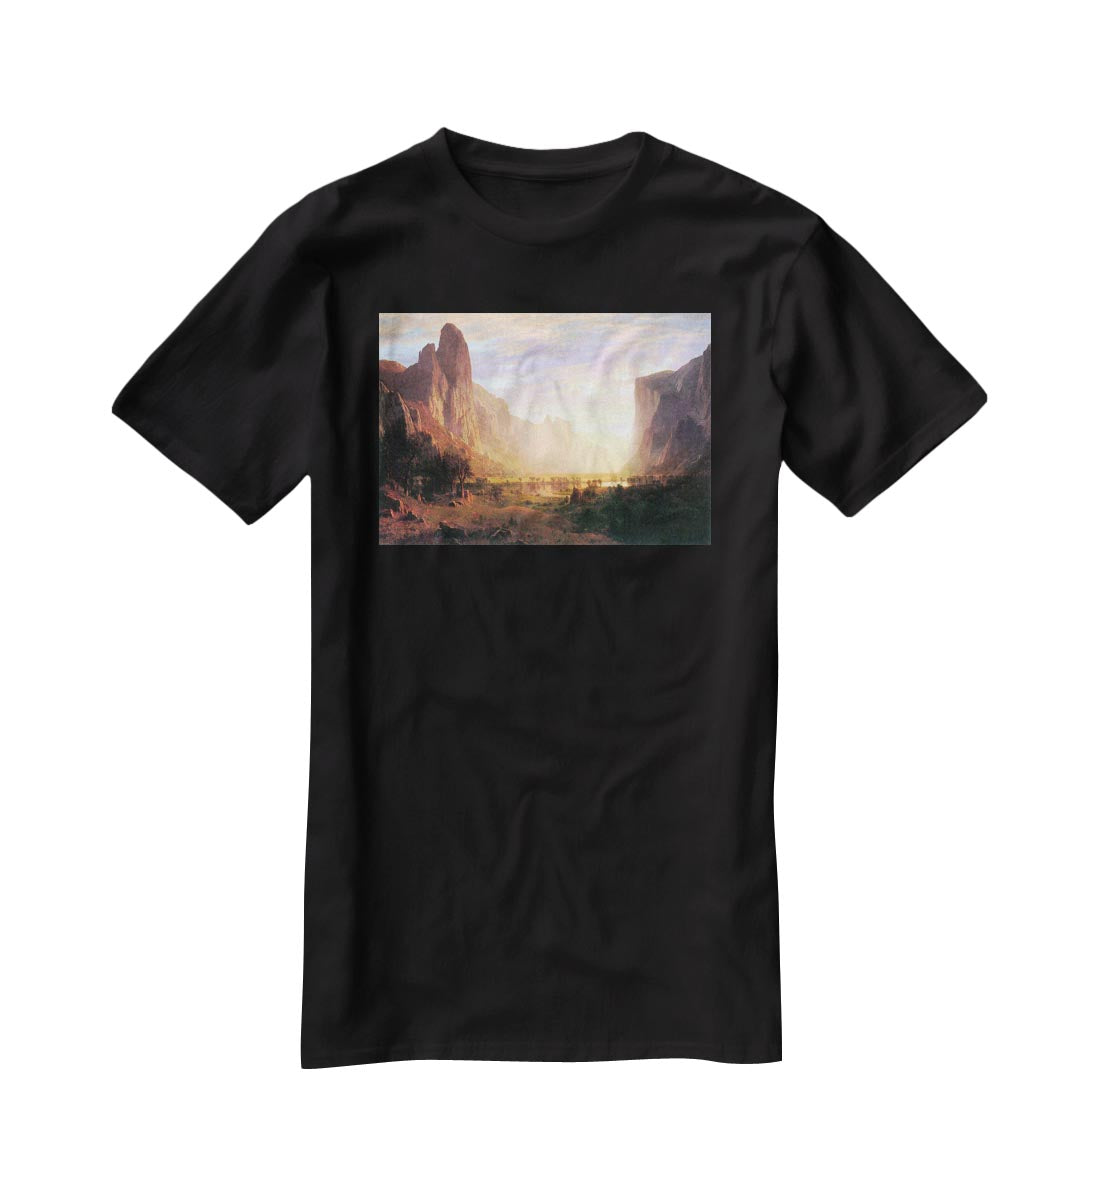 Yosemite Valley 3 by Bierstadt T-Shirt - Canvas Art Rocks - 1